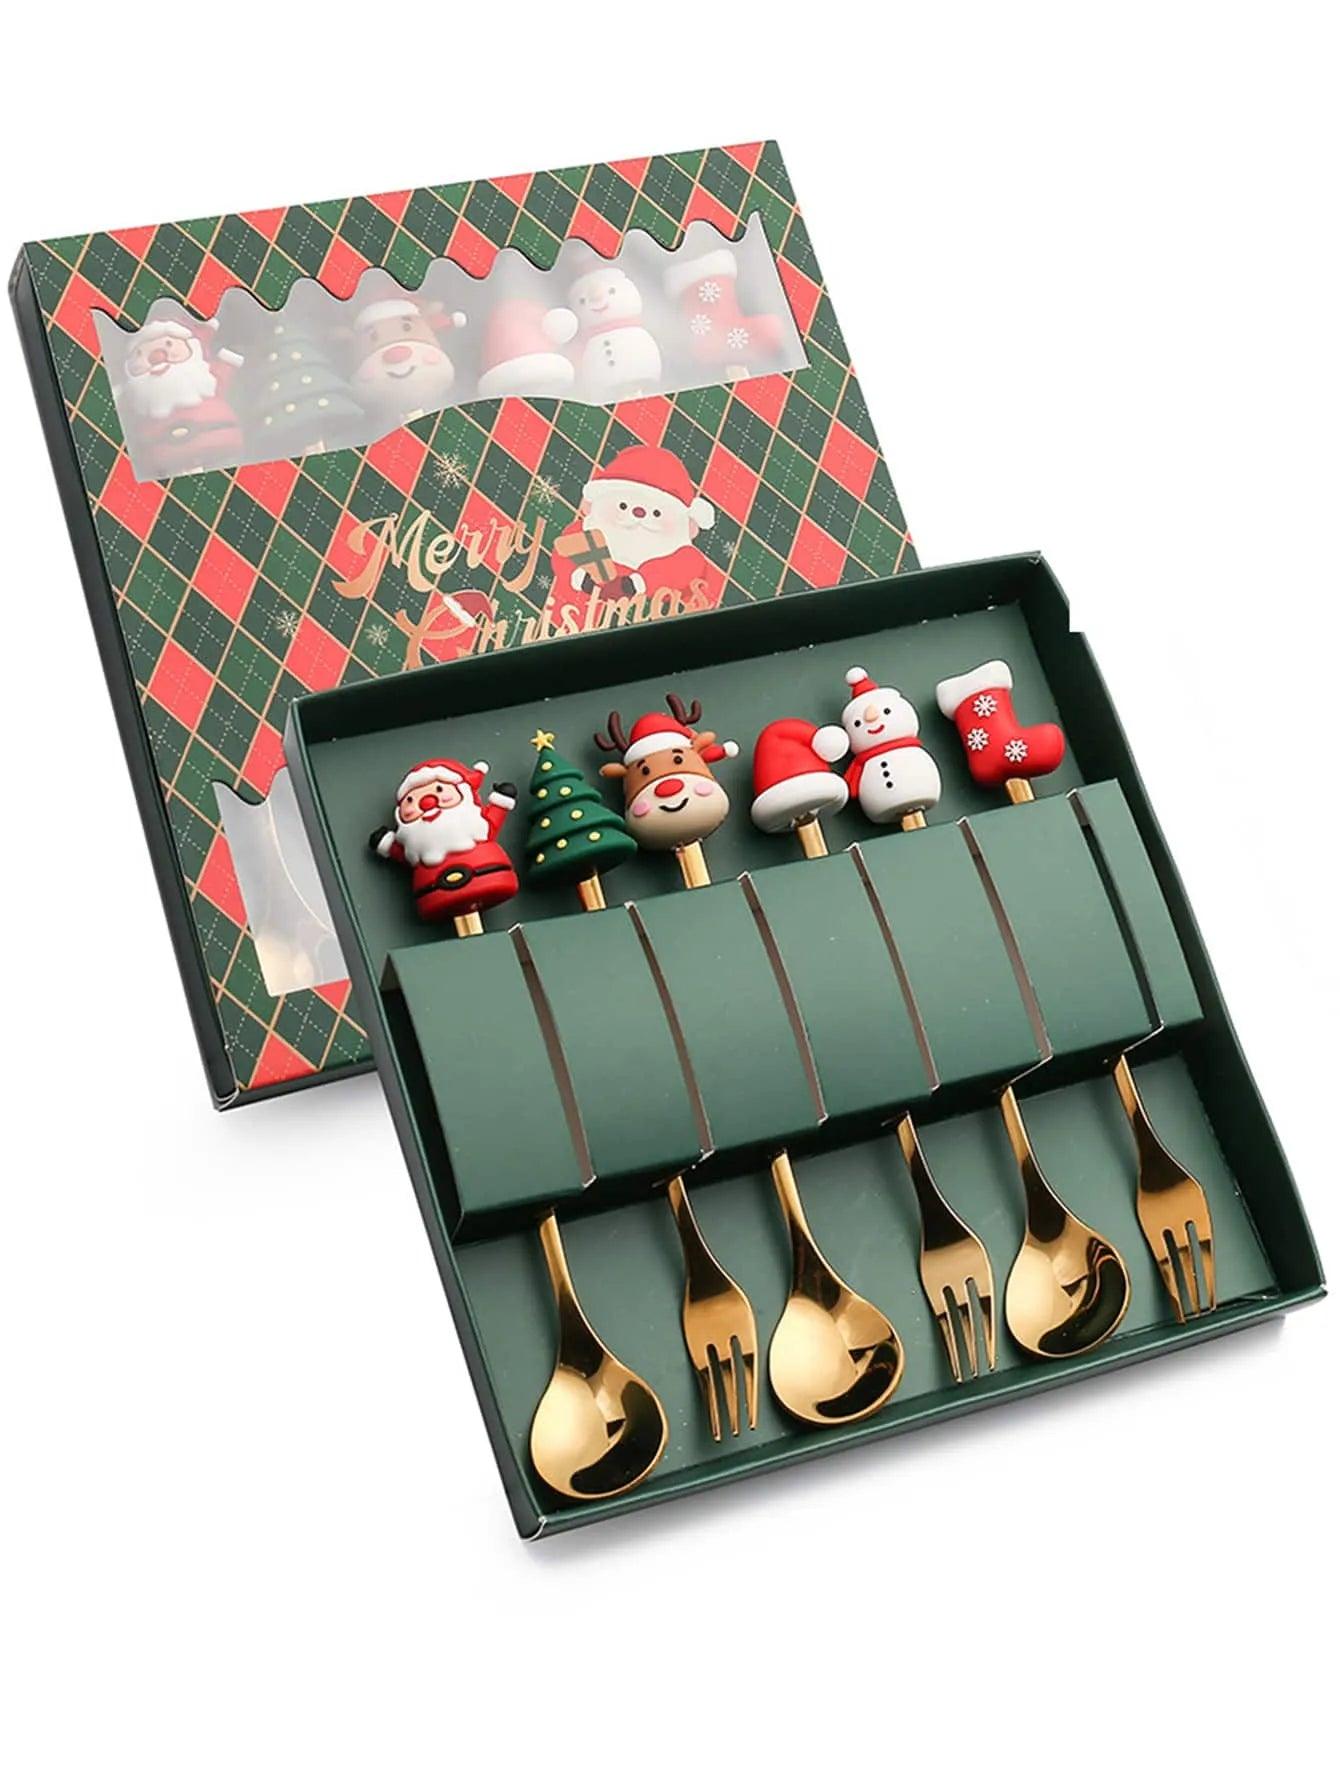 Santa-themed Stainless Steel Christmas Utensils Gift Set for Kids  ourlum.com   